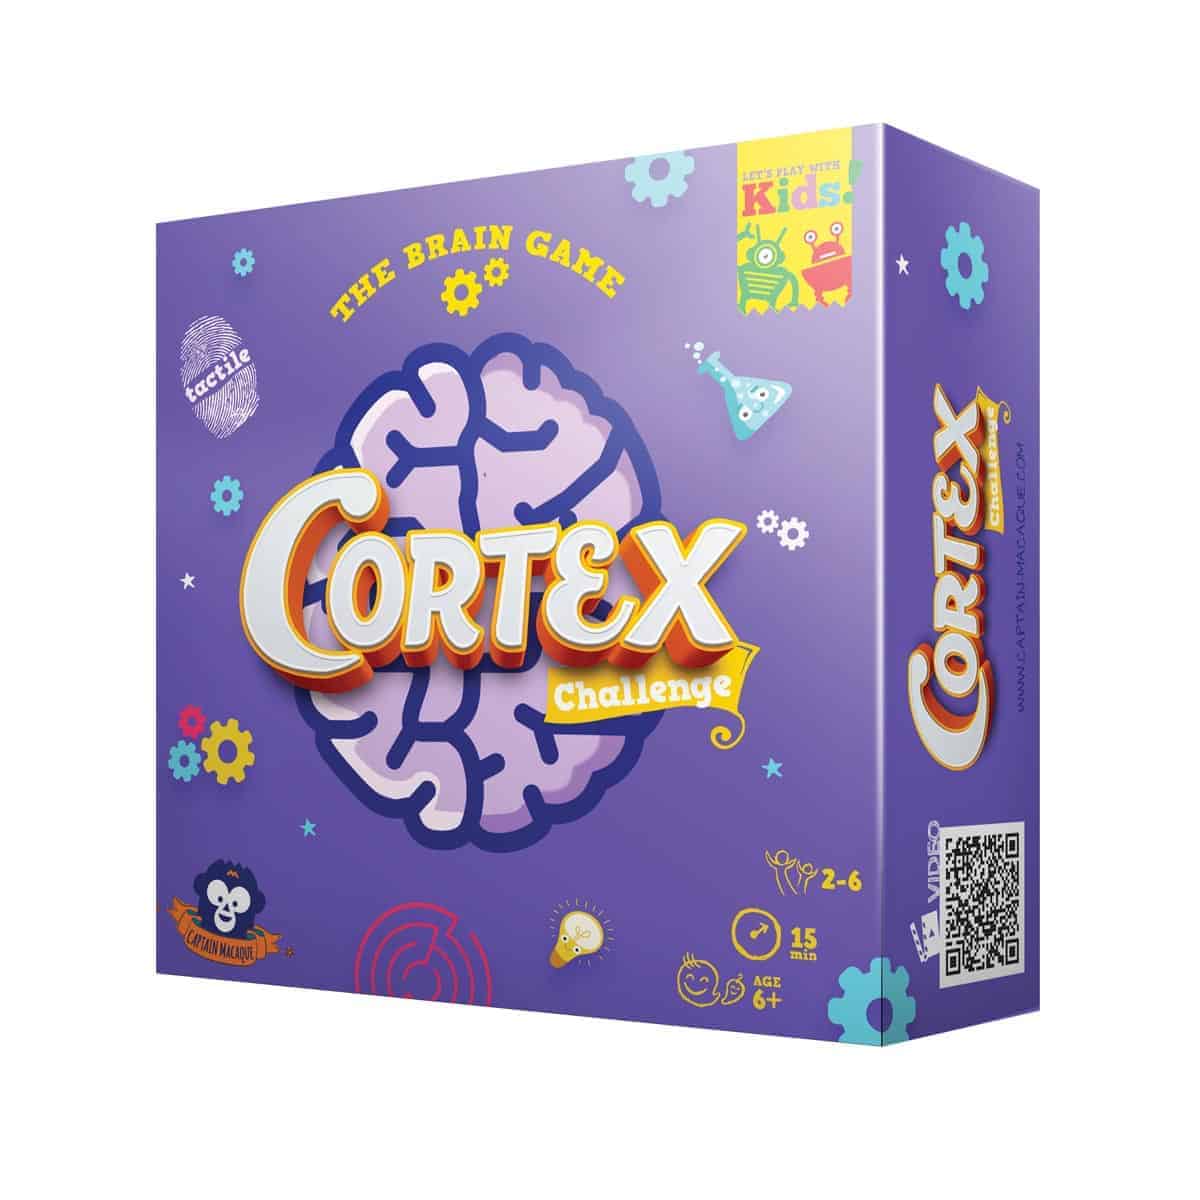 სამაგიდო თამაში კორტექს გამოწვევა საბავშვო (Cortex Challenge KIDS) სამაგიდო თამაში